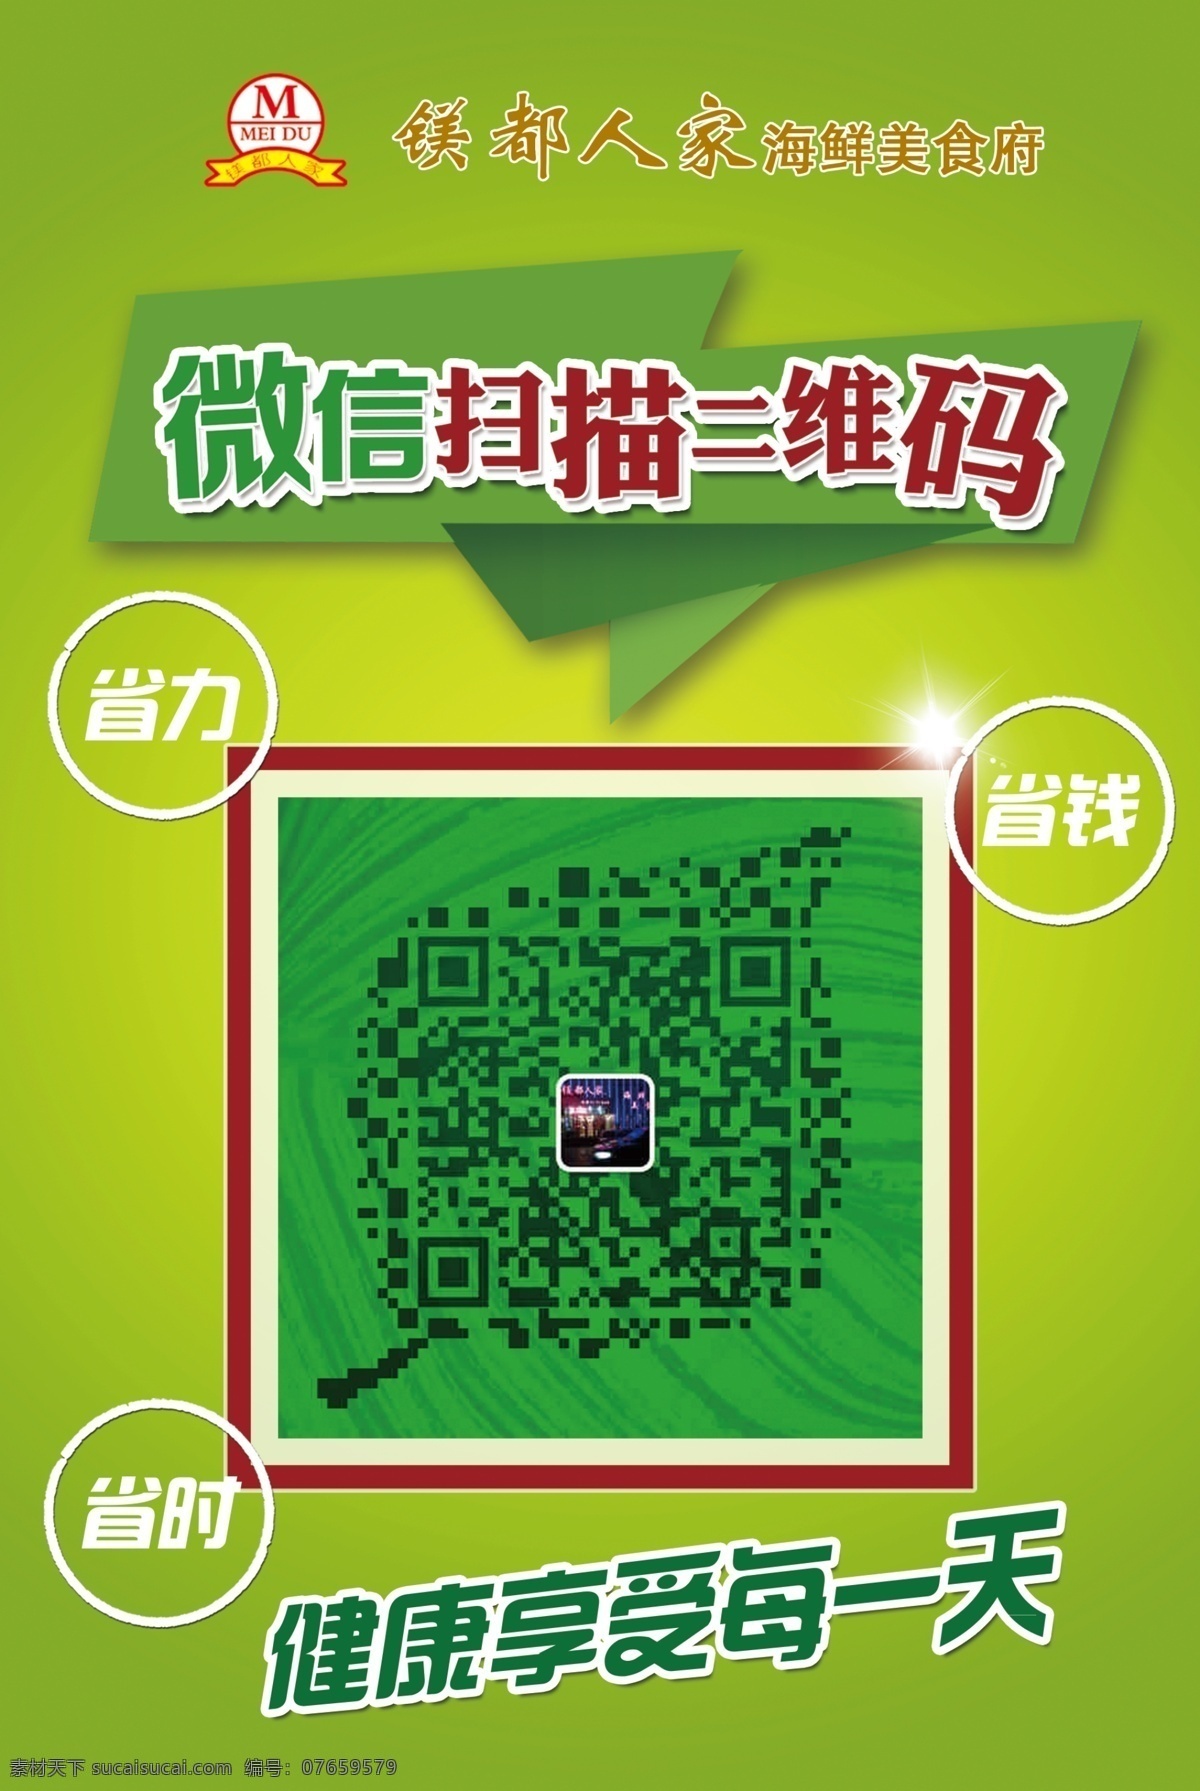 微 信 二维码 扫描 海报 微信 二维码海报 二维码扫描 微信logo 微信公众平台 二维码广告 二维码营销 促销海报 杂货铺 分层